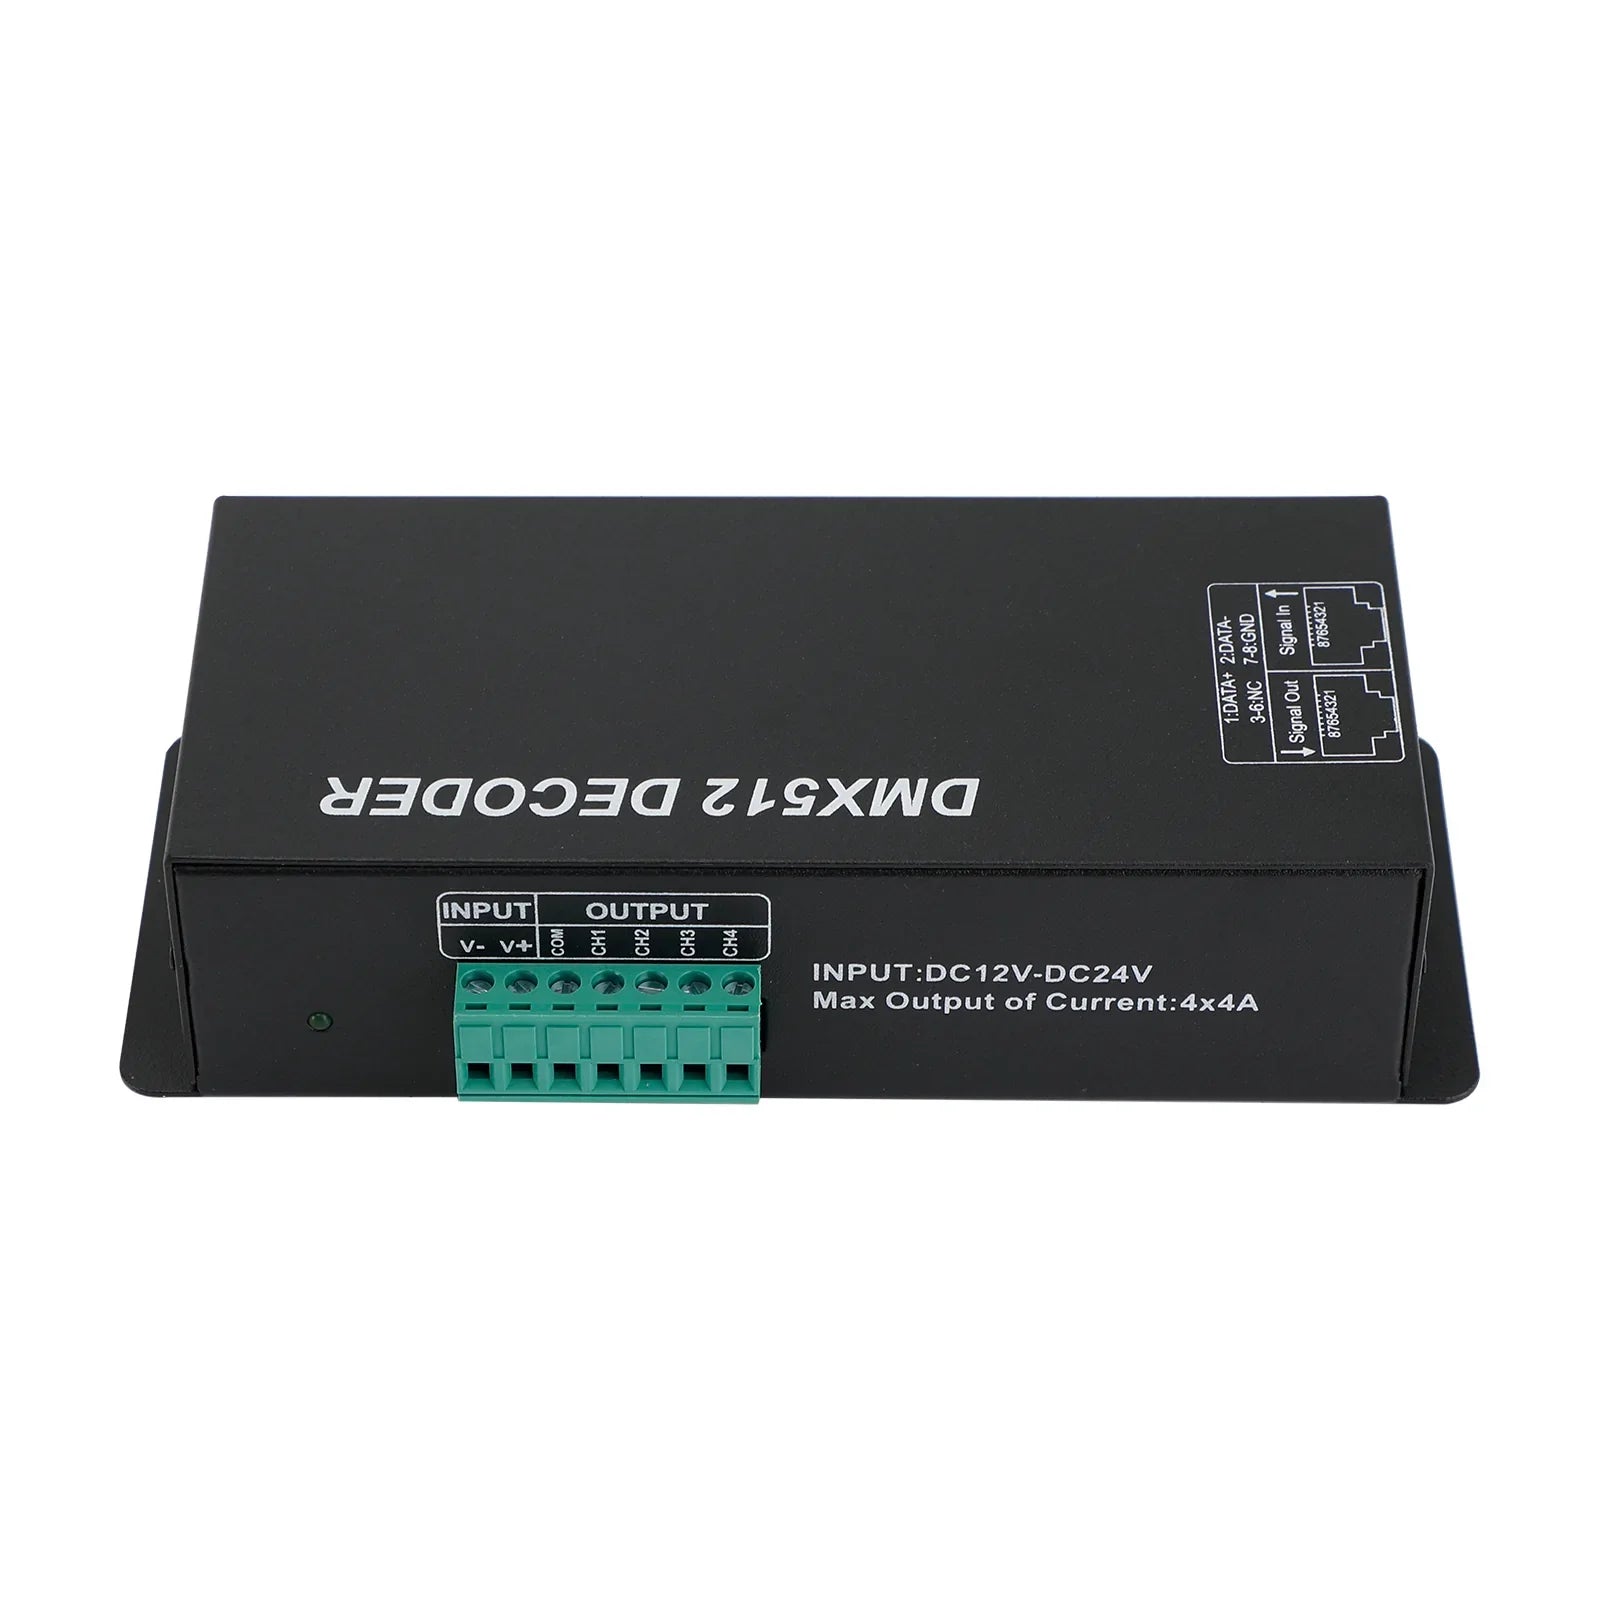 LED RGBW DMX 512 Controlador Decodificador Dimmer 4 Canales 16A 4x4A Raya de luz